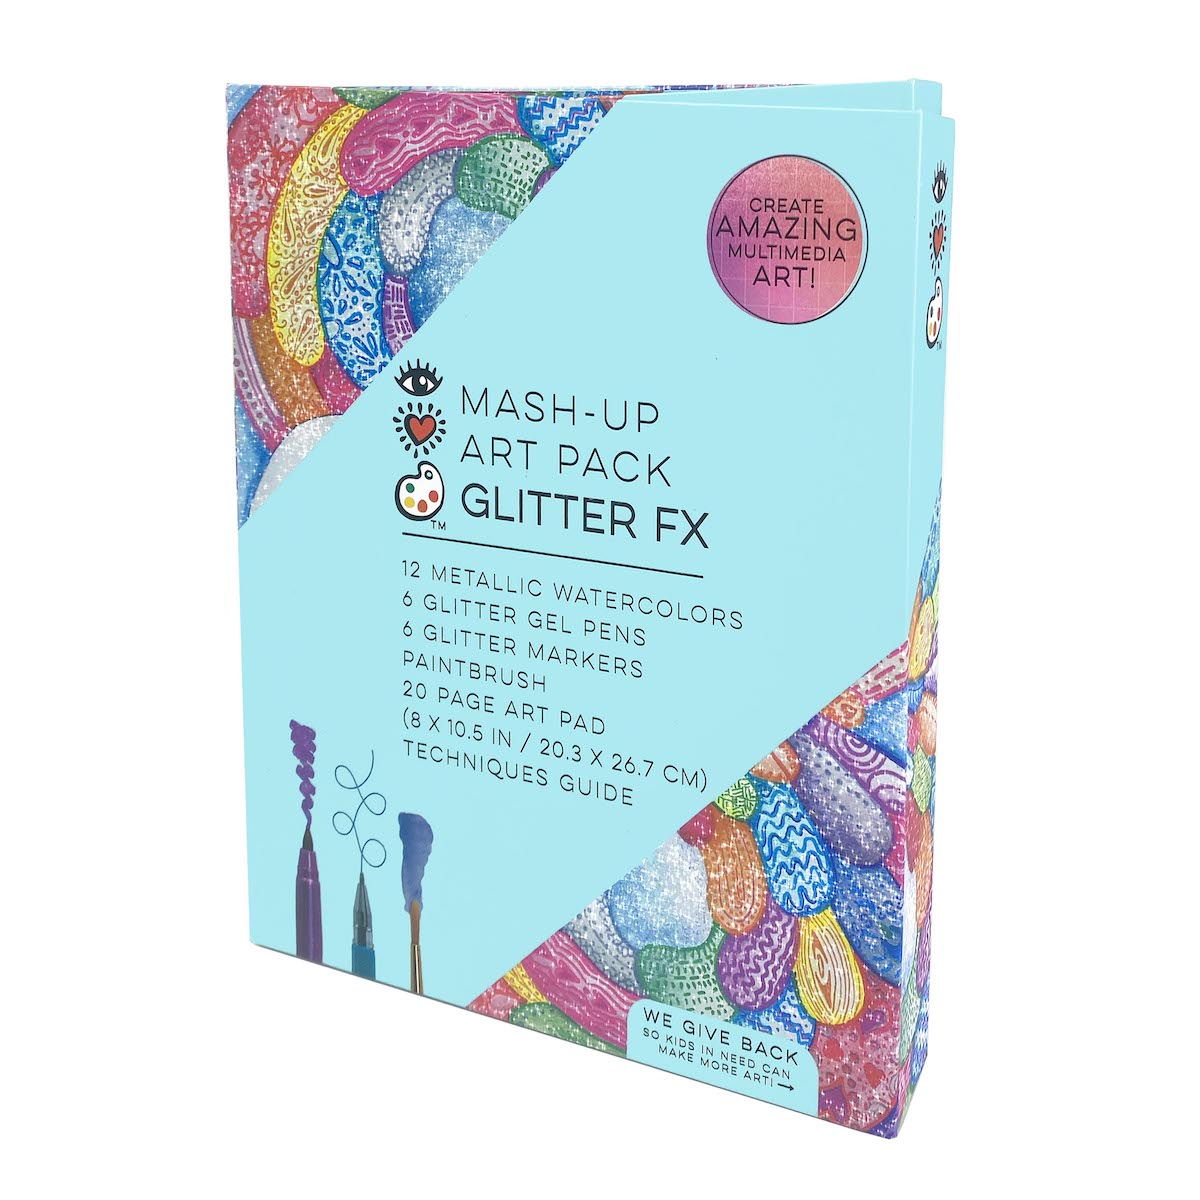 Mash-Up Art Pack Glitter FX